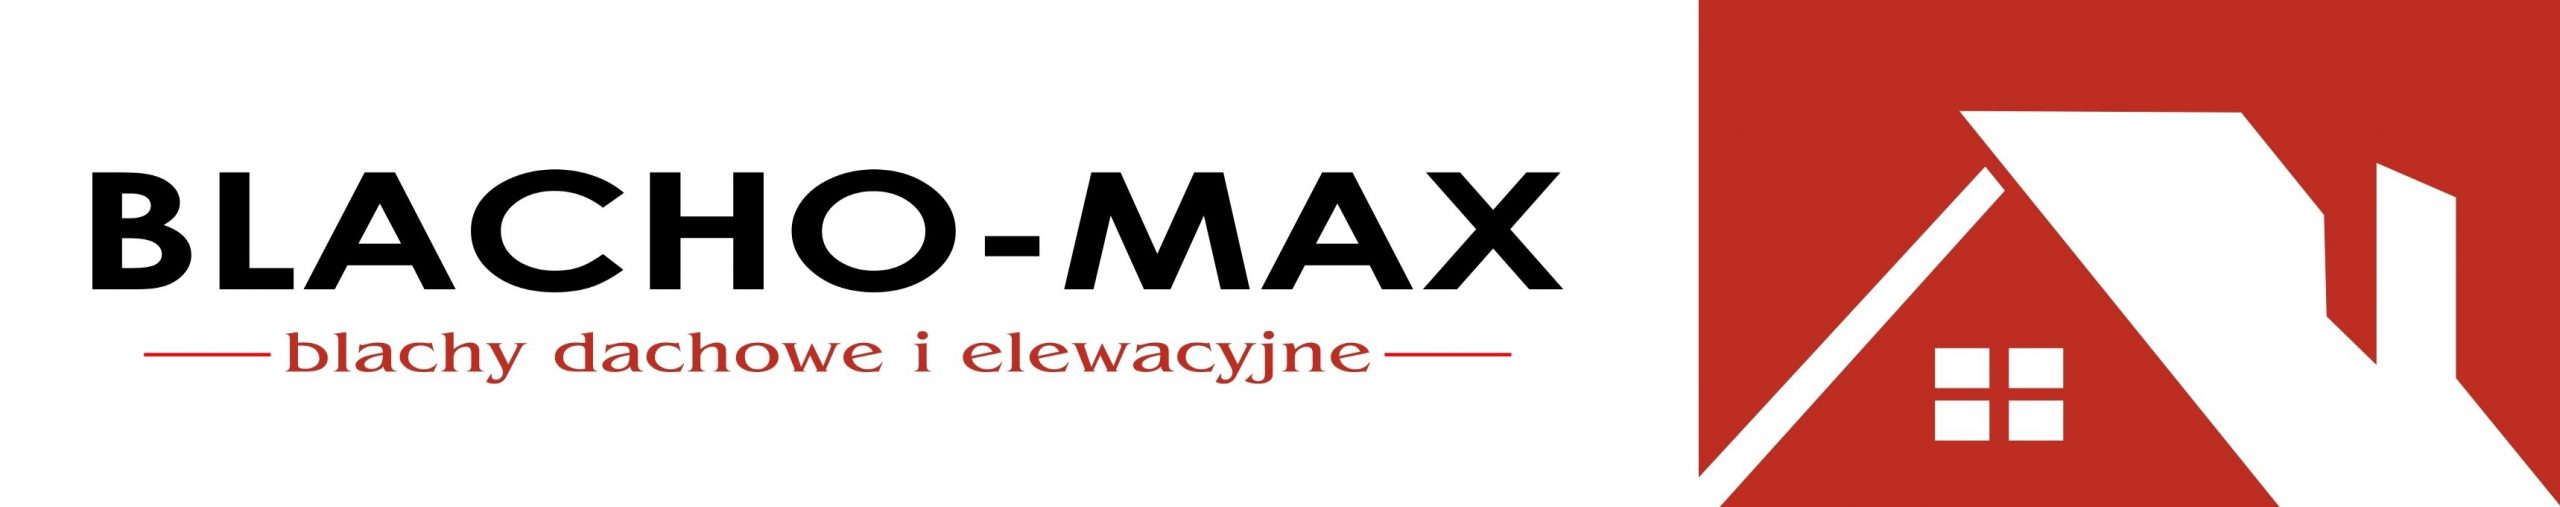 BLACHO-MAX